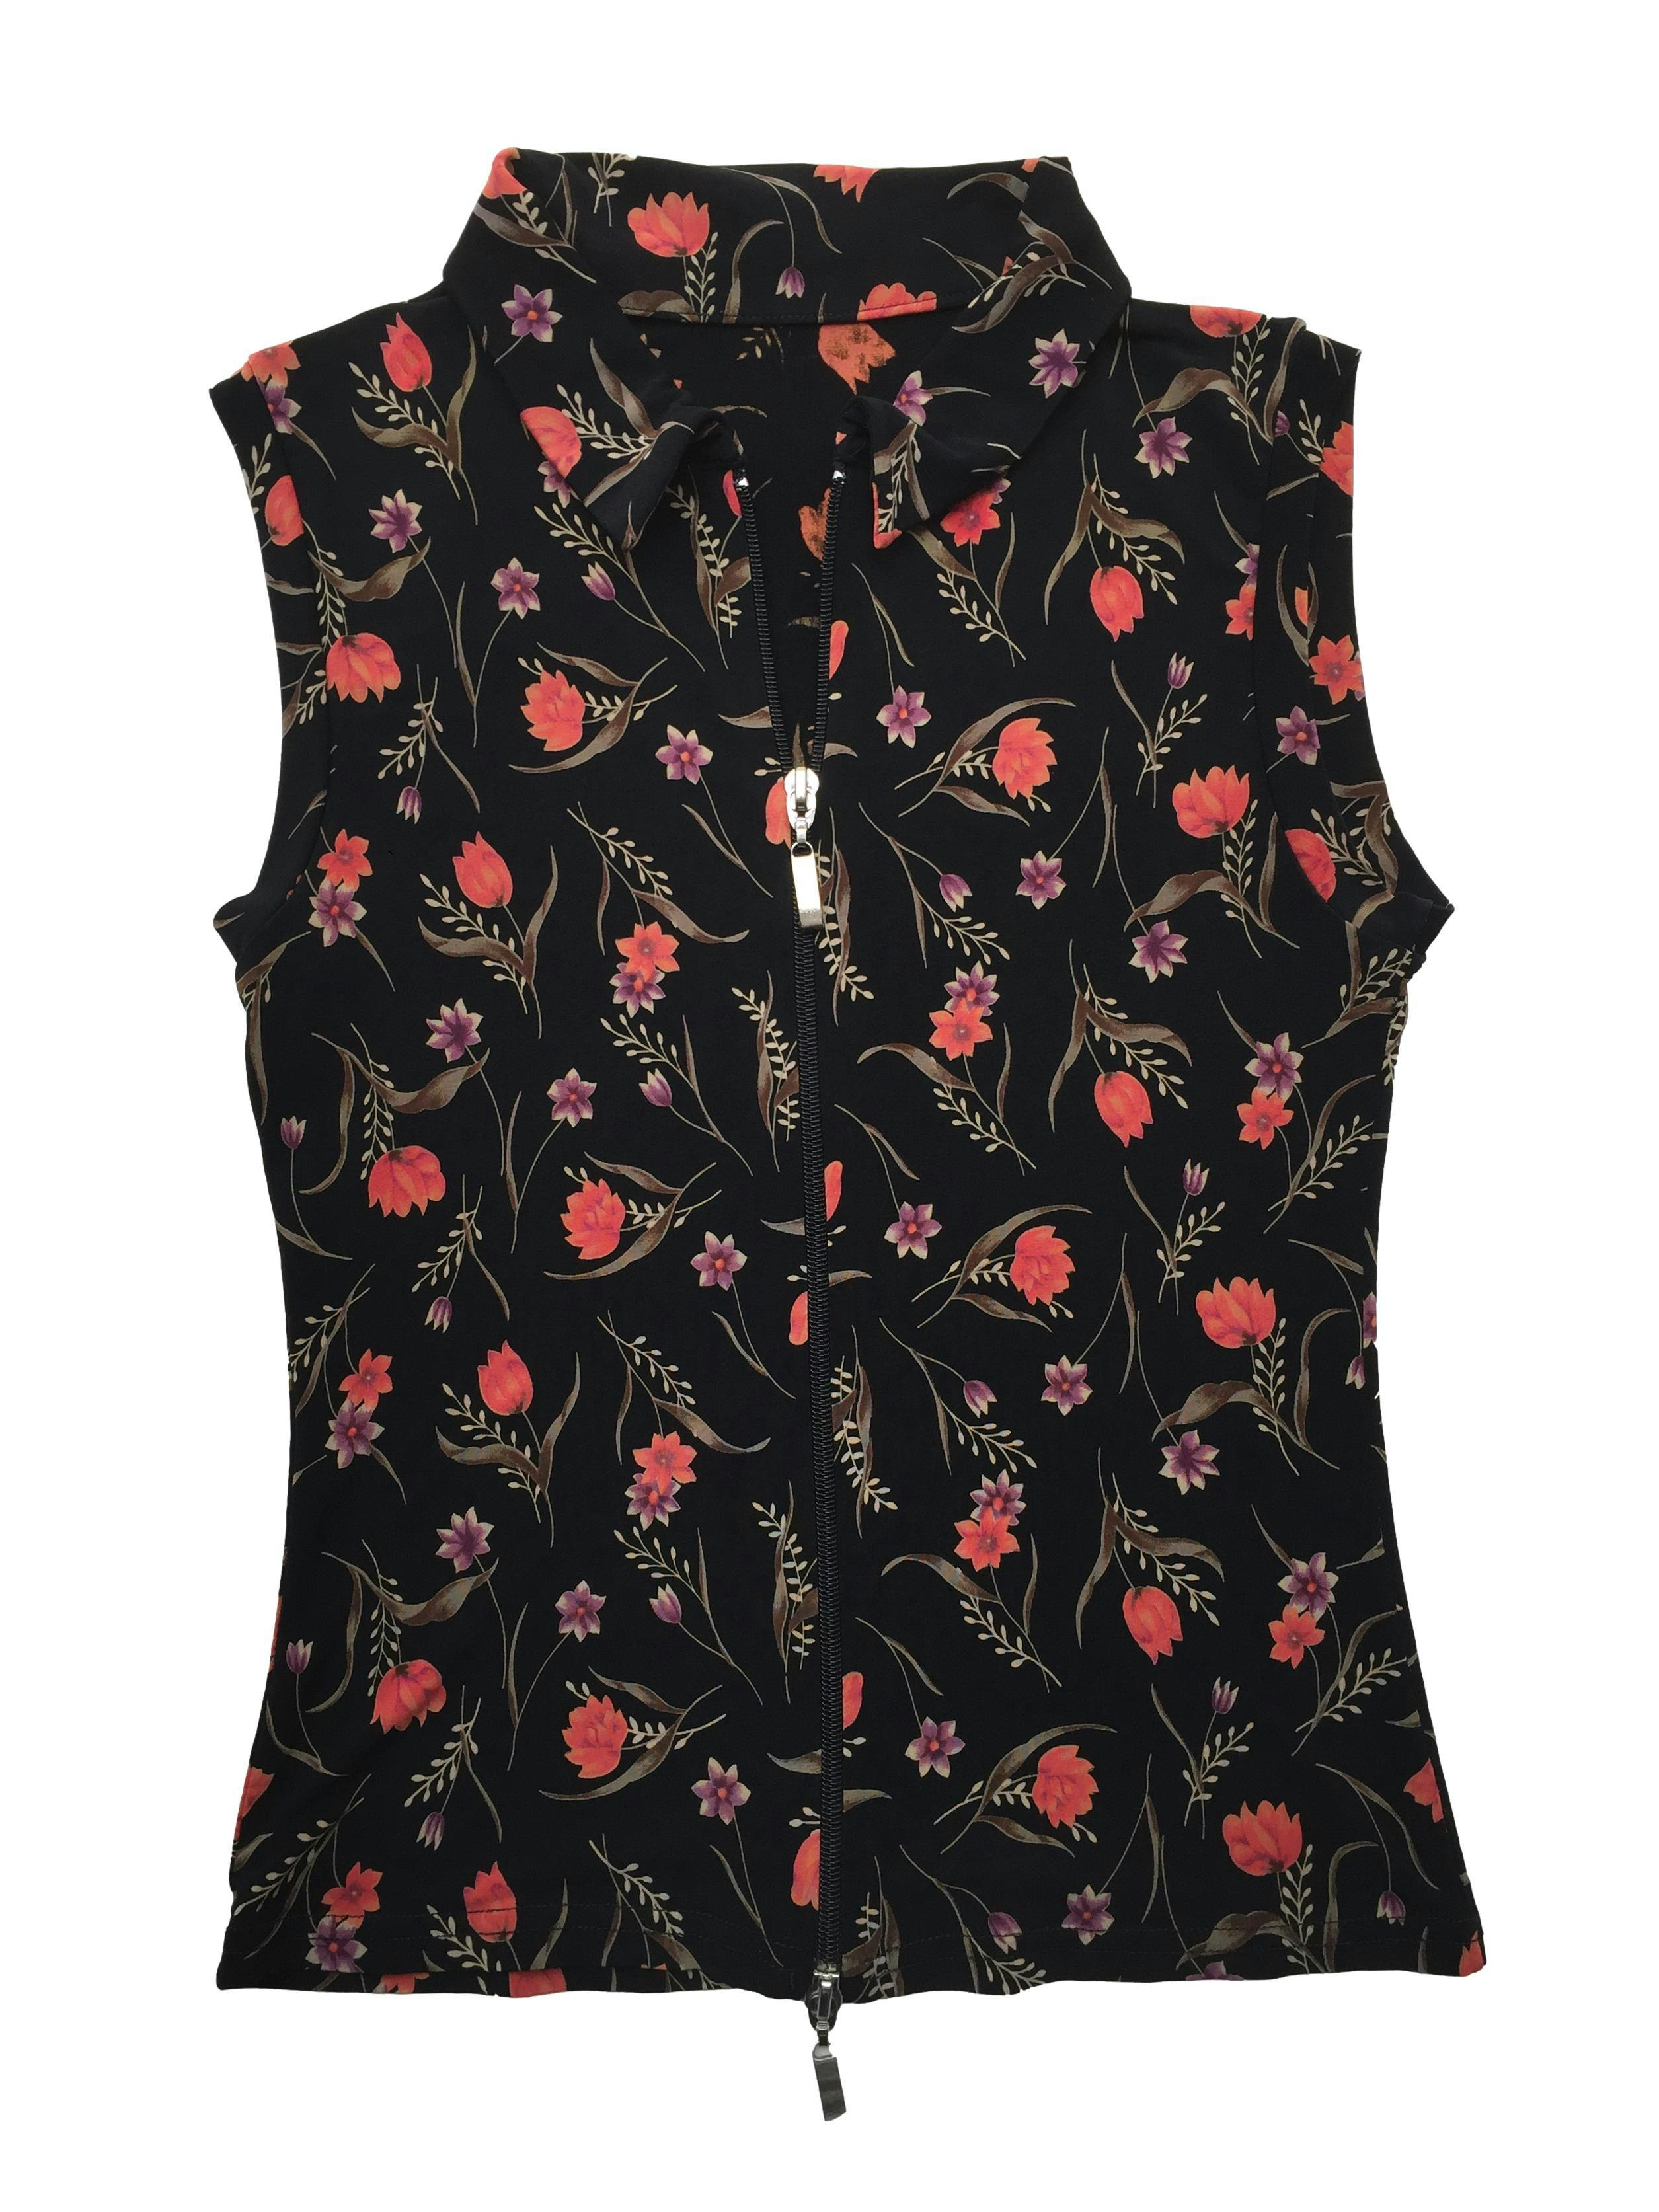 Blusa vintage negra con estampado floral, tela fresca stretch, cuello camisero y cierre metálico doble sentido. Busto 84cm sin estirar, Largo 48cm.